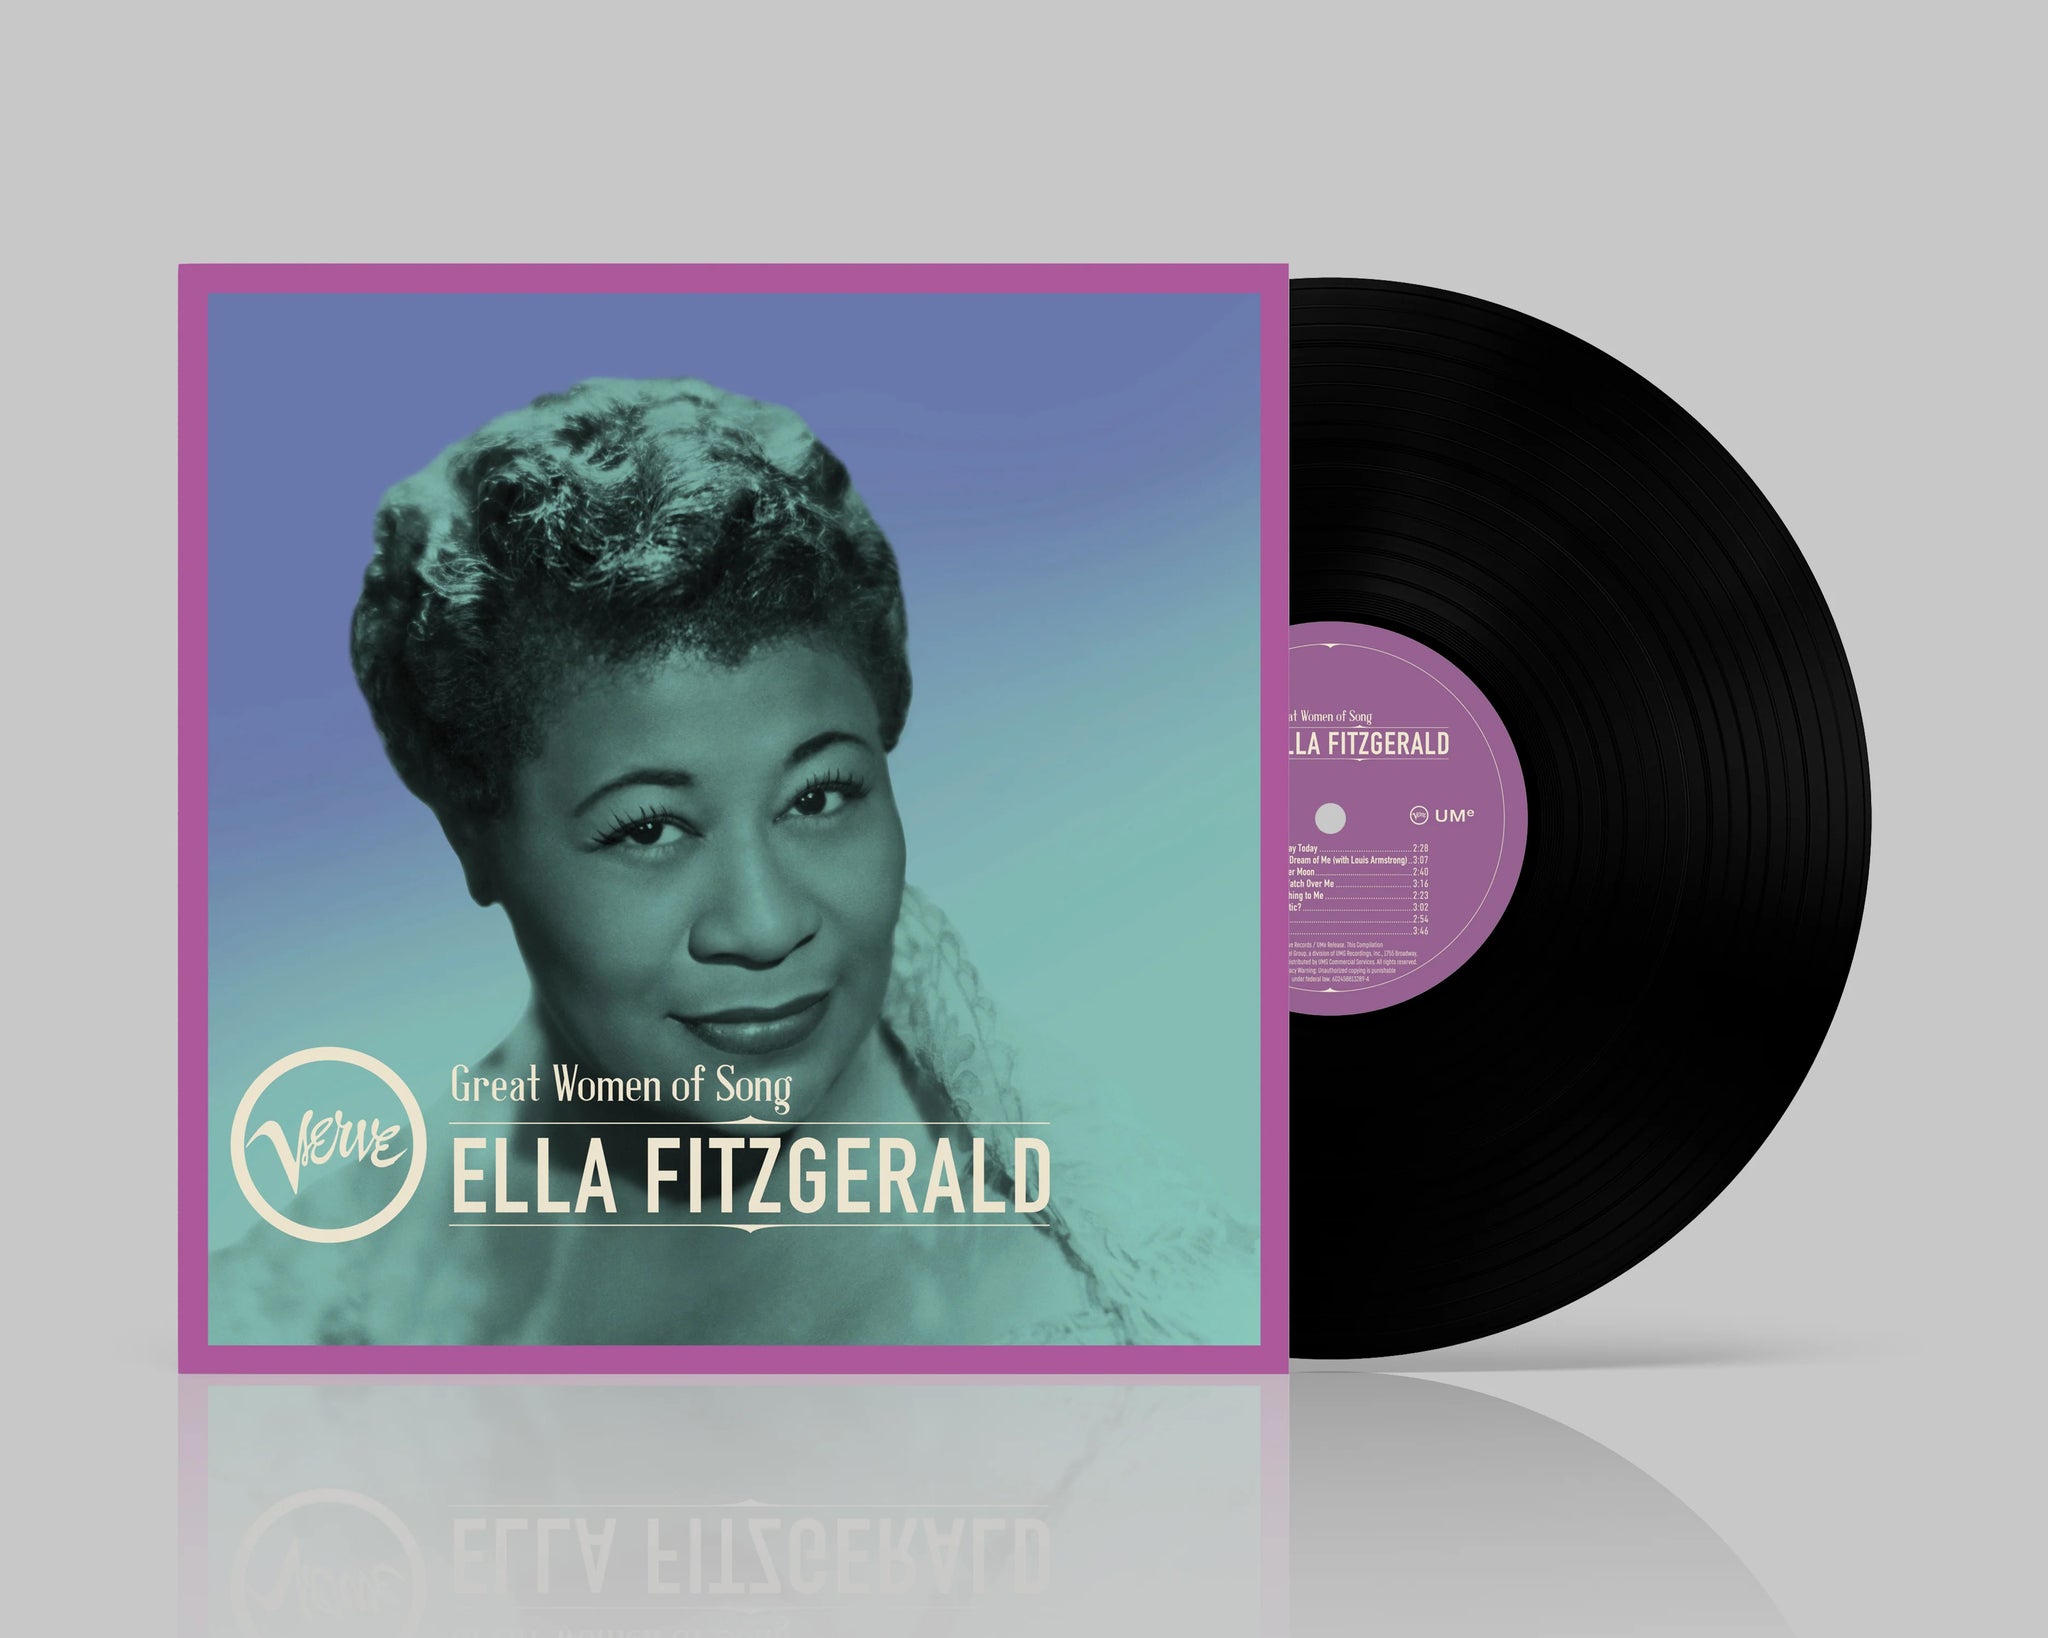 ELLA FITZGERALD - Great Women Of Song: Ella Fitzgerald - LP - Vinyl [MAR 8]